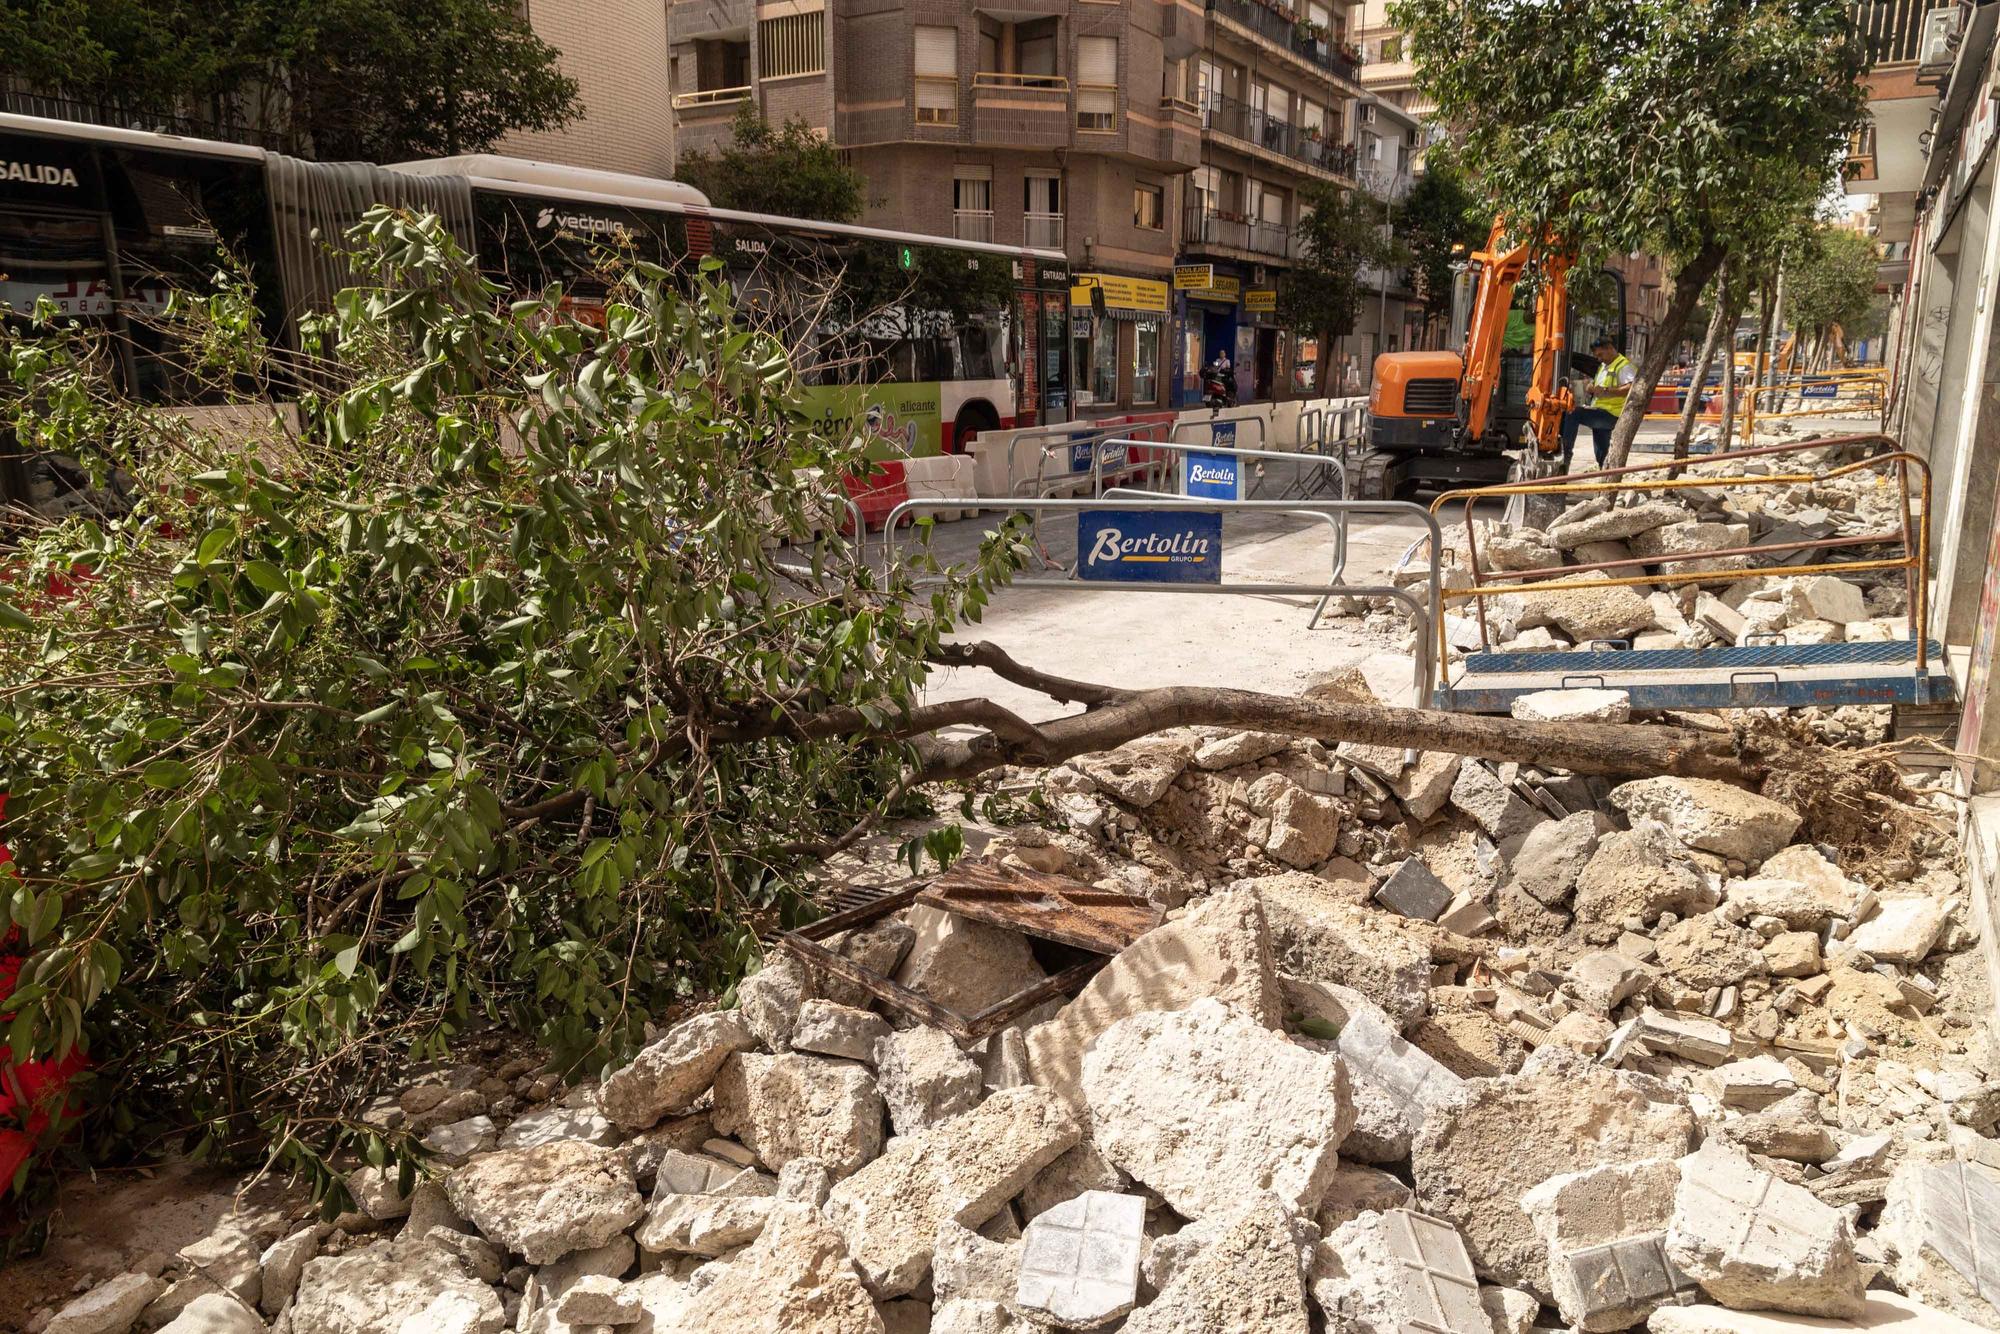 Arrancan árboles en la zona de obras de la Avenida de Jijona y Maestro Alonso